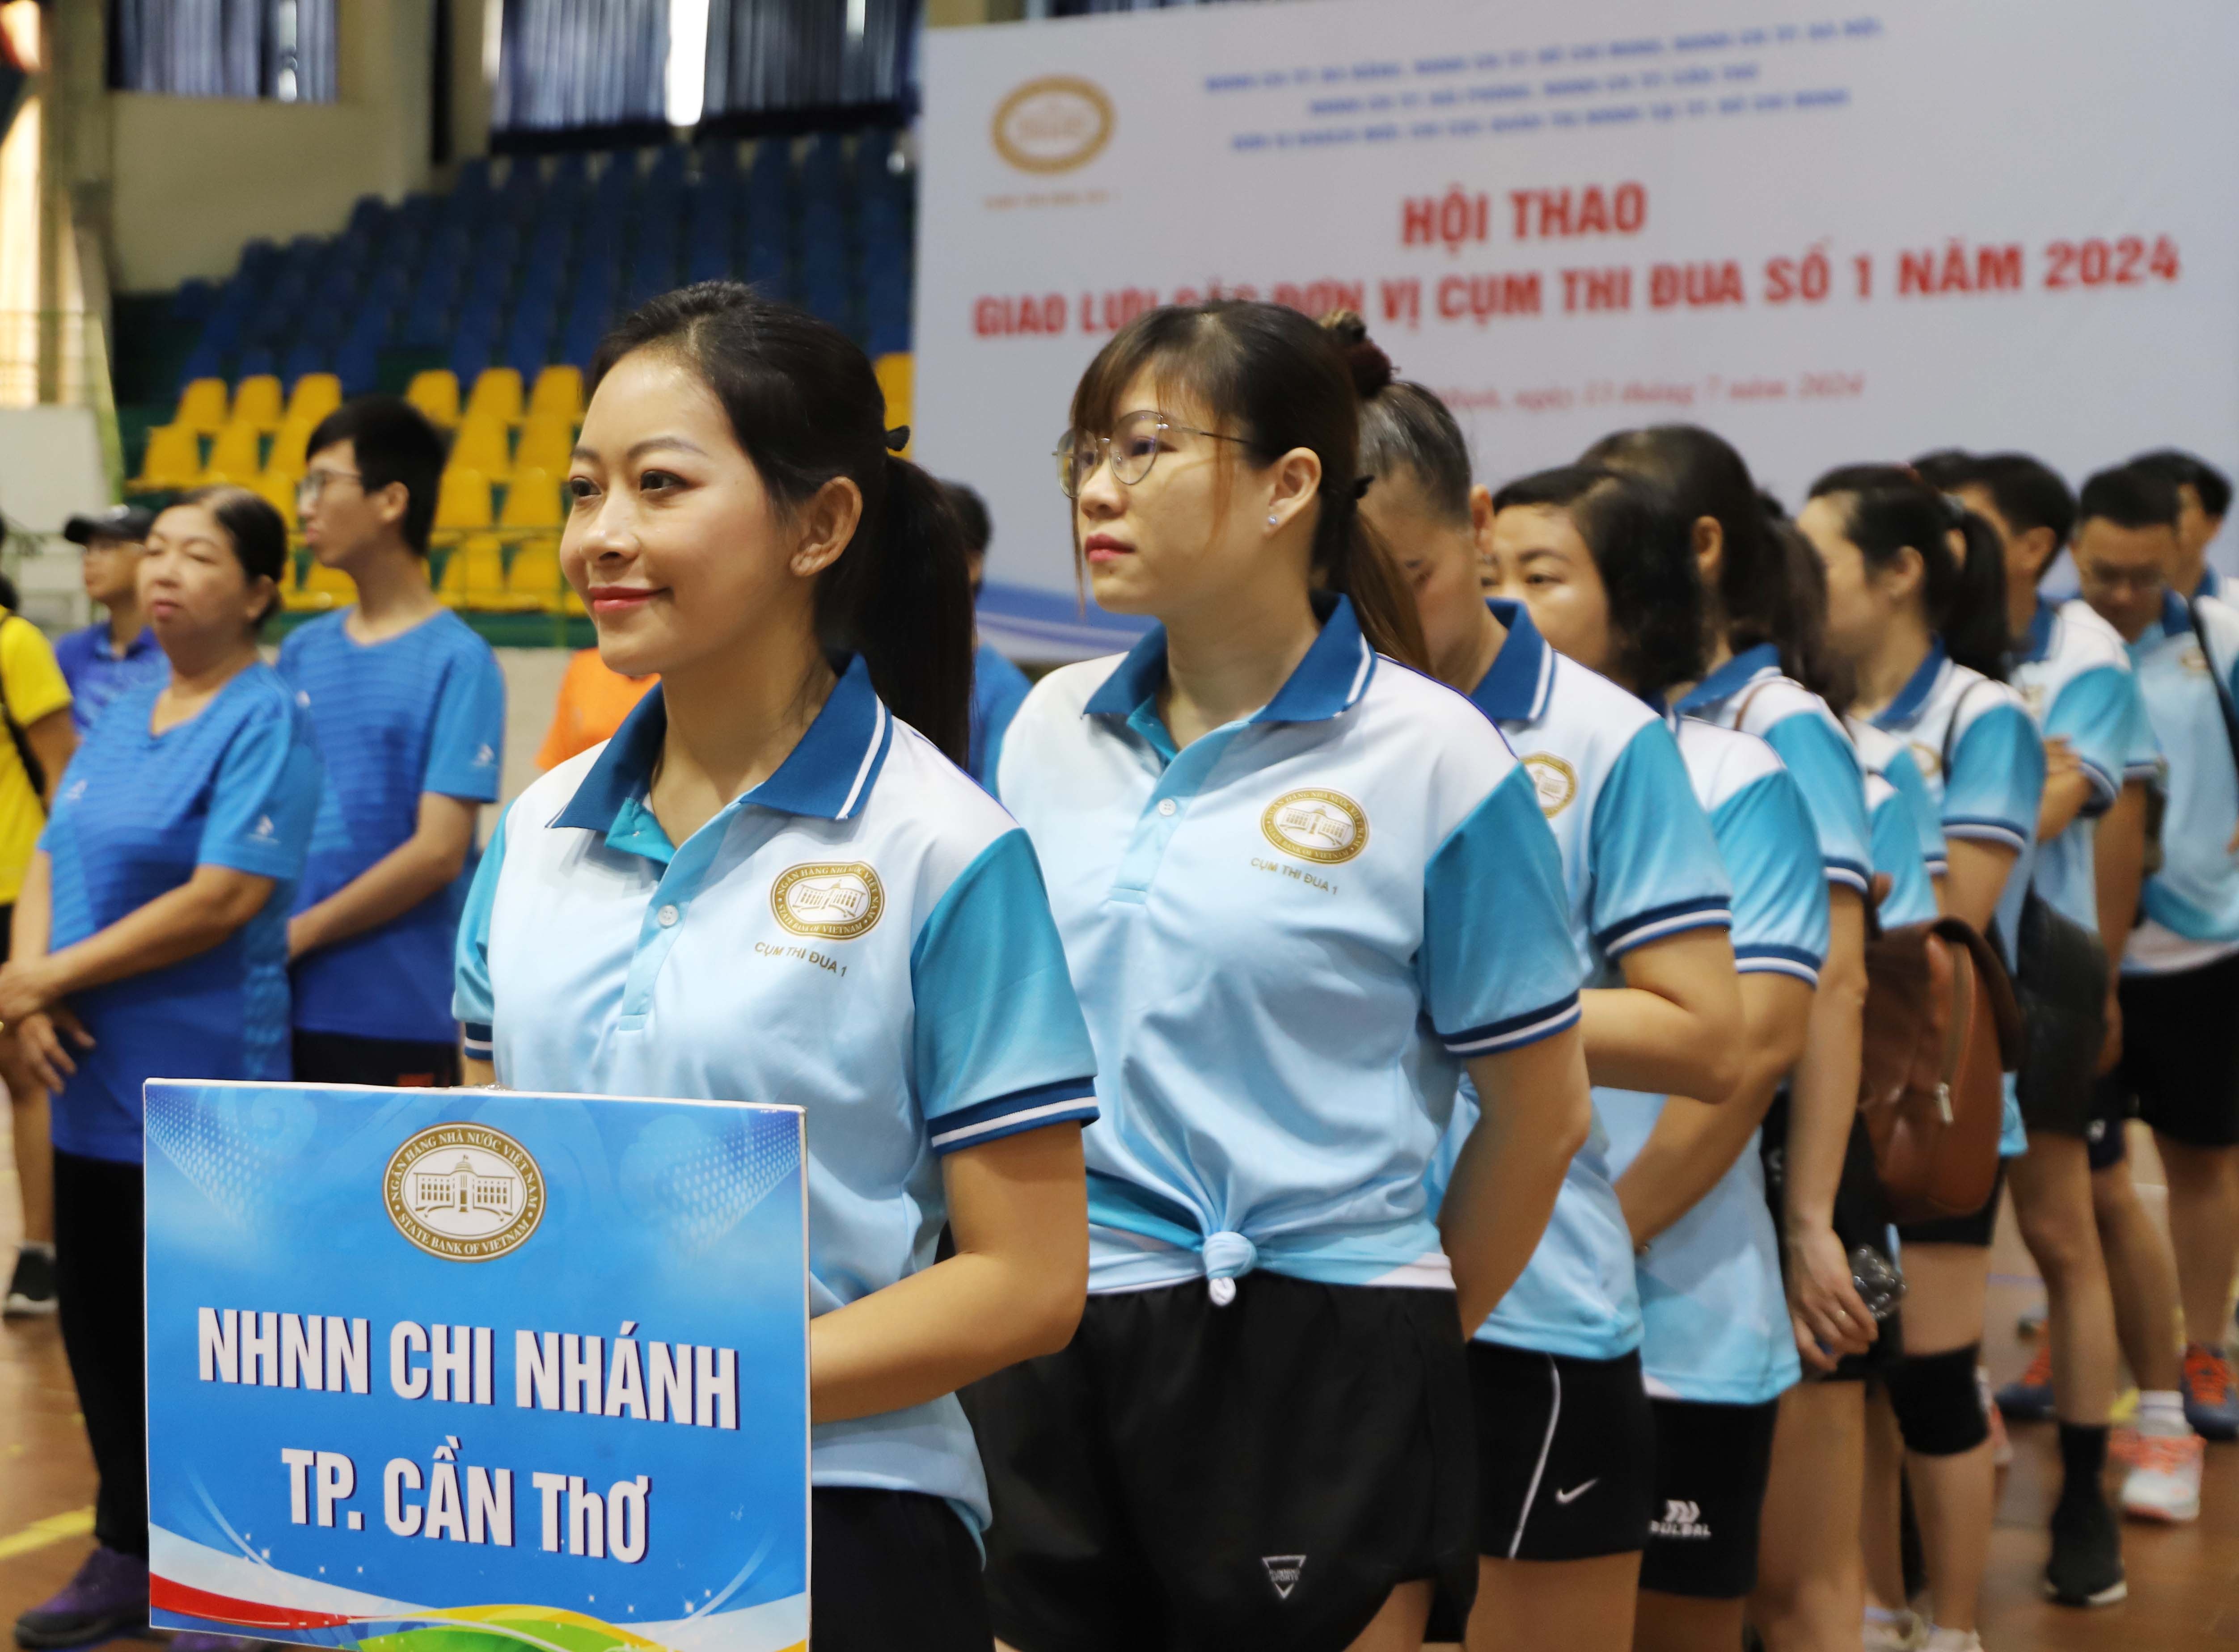 Mỗi cán bộ công chức người lao động của các chi nhánh NHNN tham gia hội thao trong cụm được khơi dậy niềm tự hào “Tôi là cán bộ Ngân hàng Việt Nam - Ảnh: Đình Hải